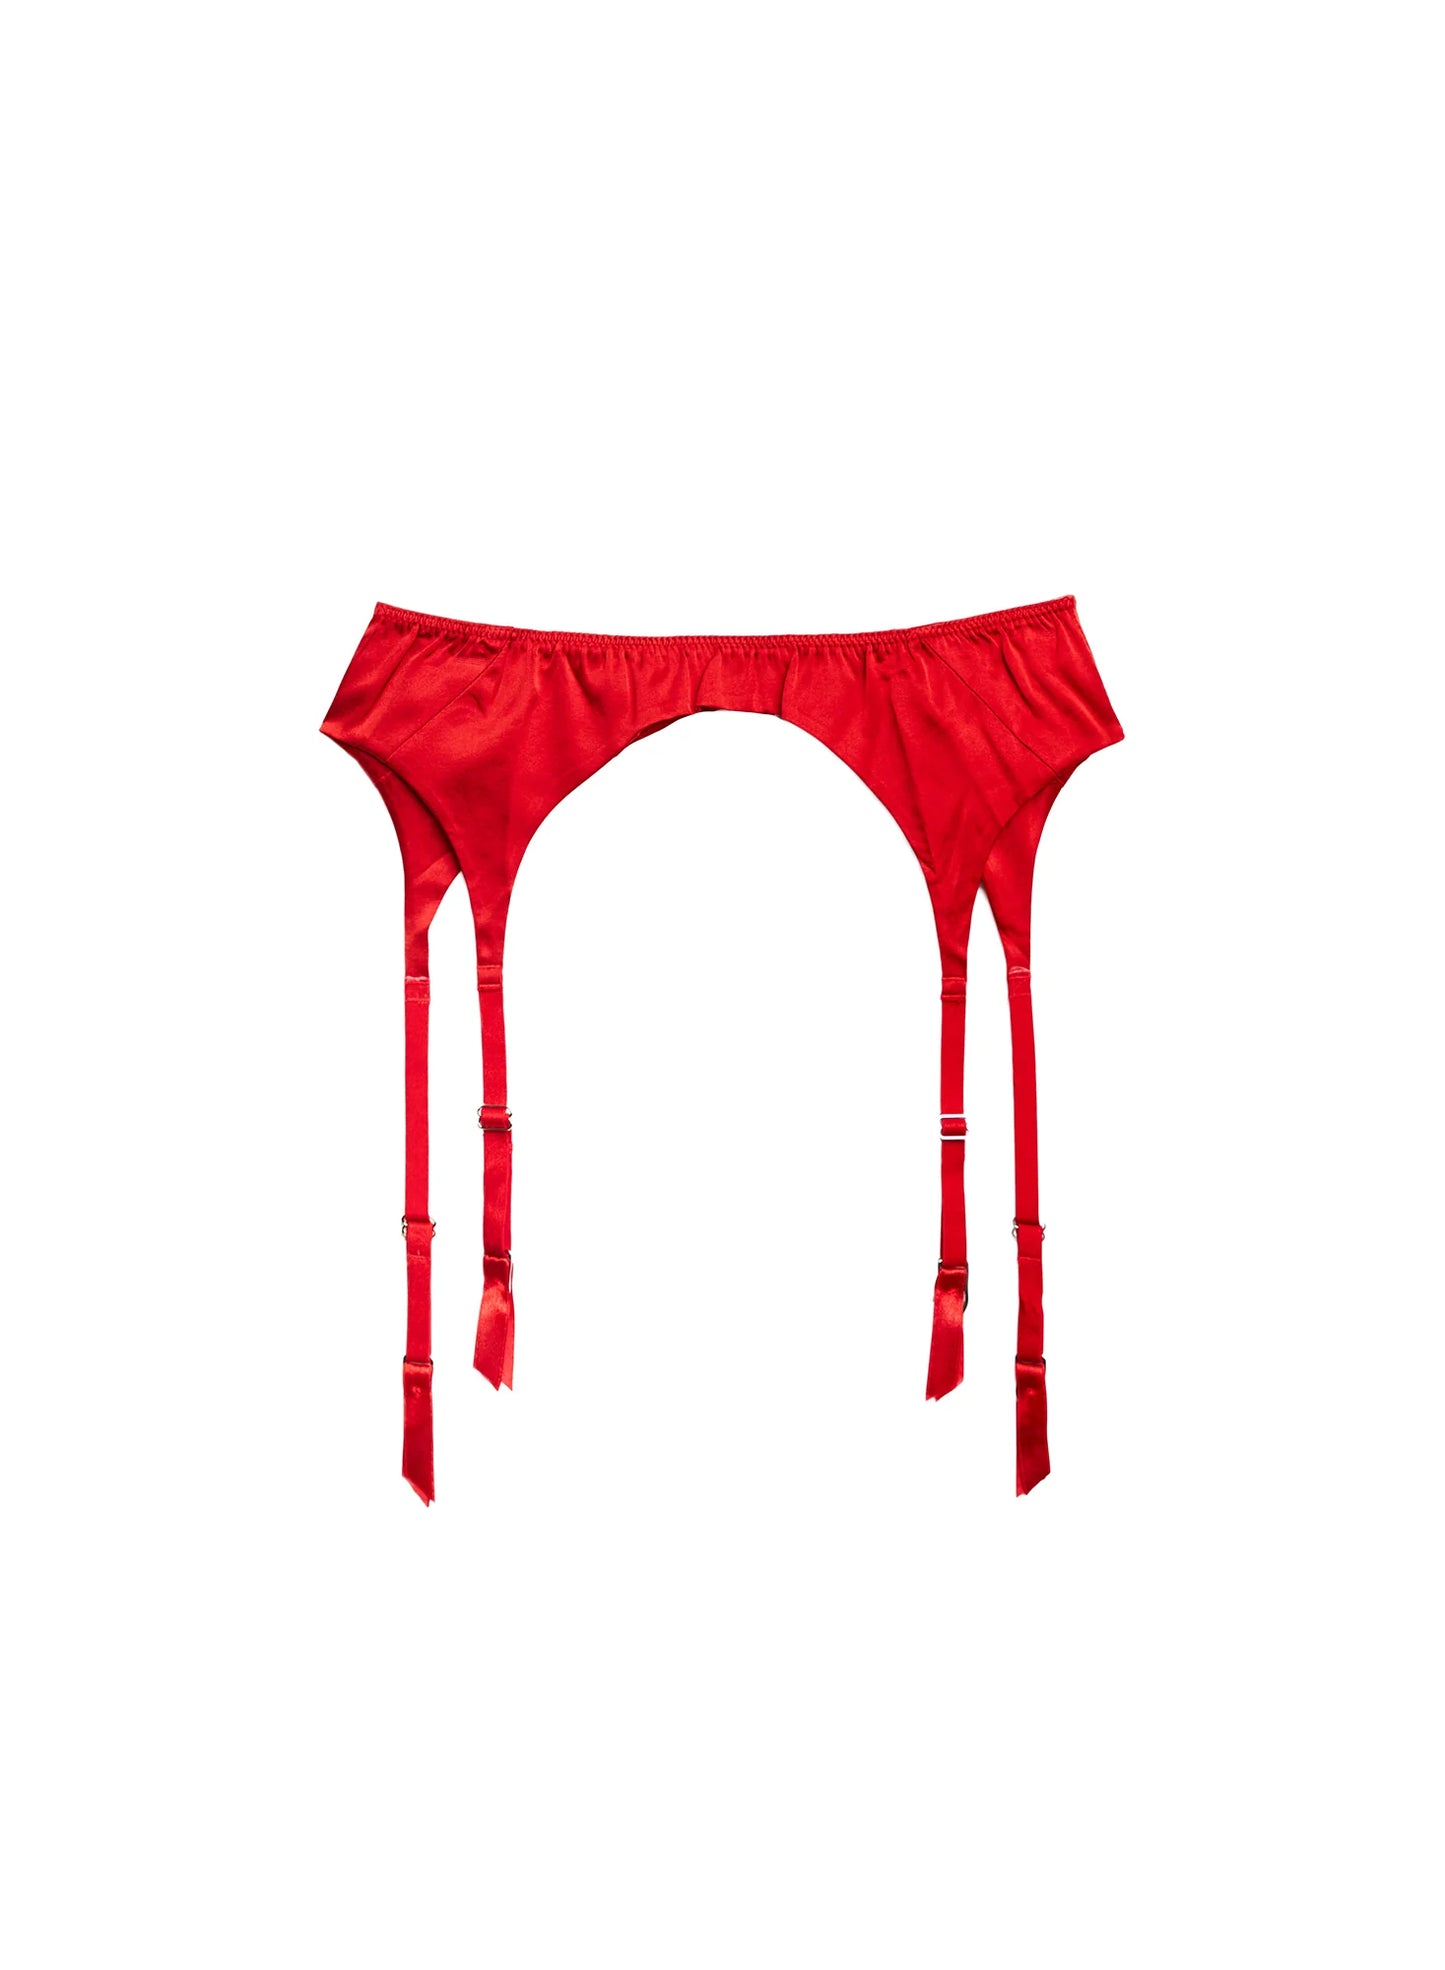 Luxe Silk Red Garter